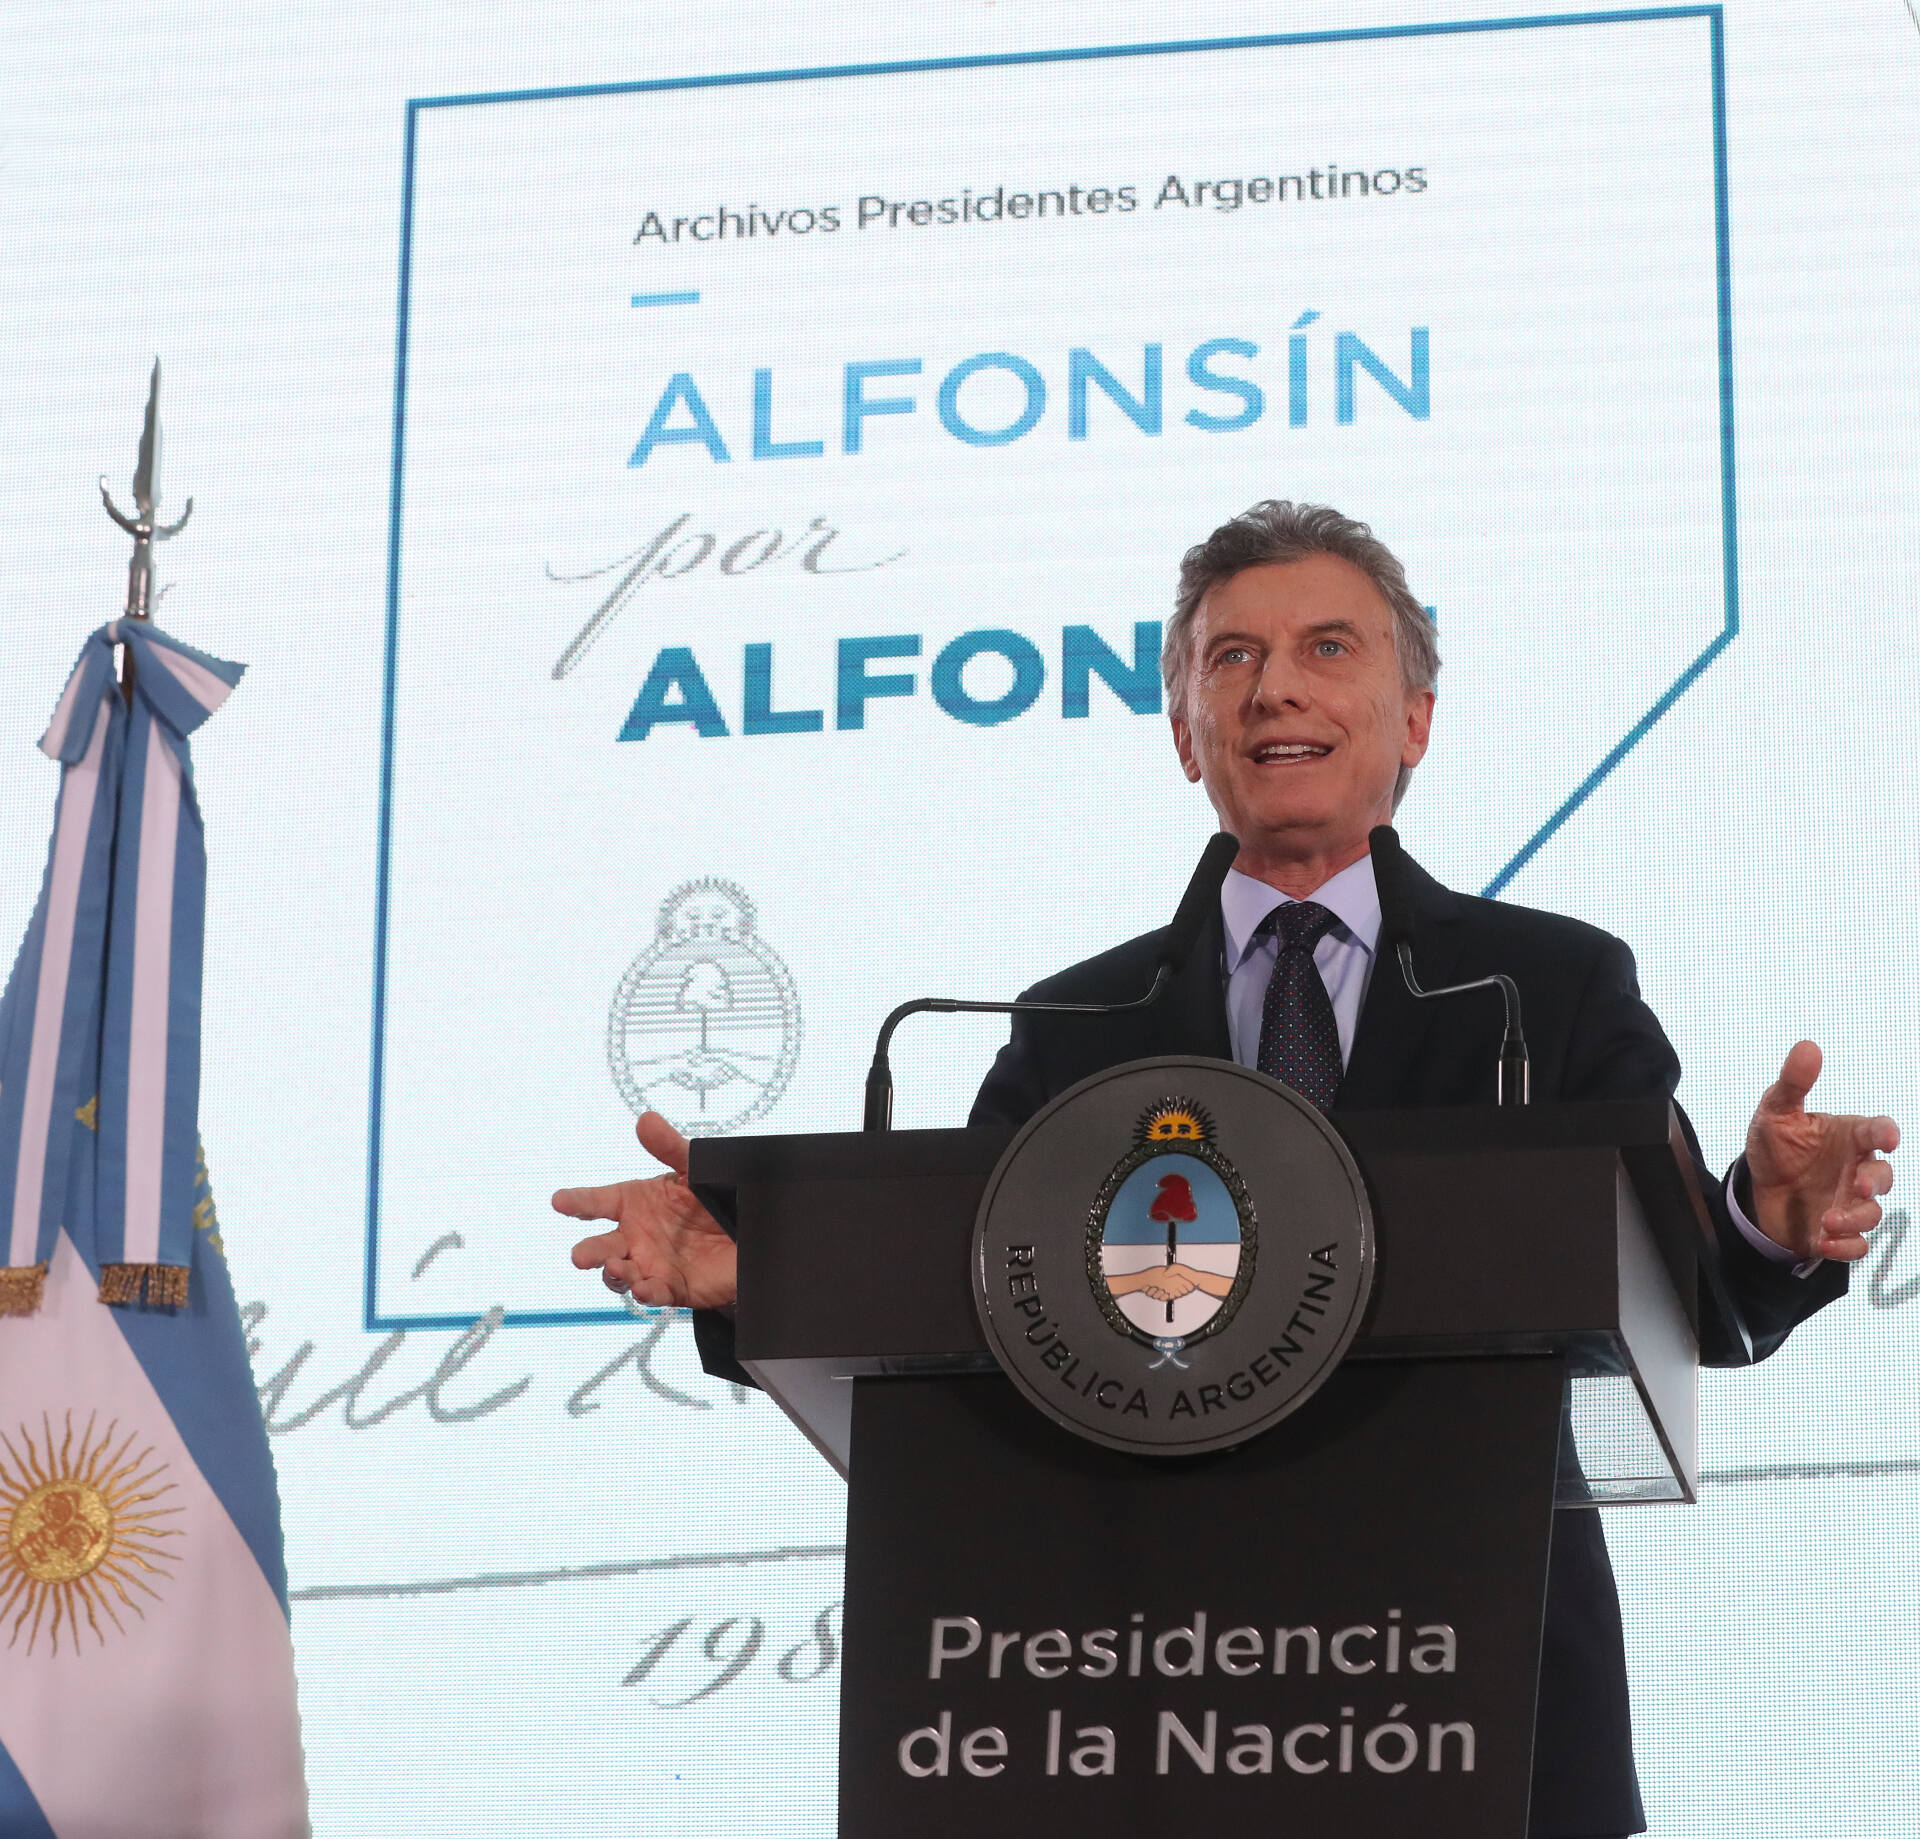 El mejor homenaje a Alfonsín es demostrar que somos capaces de construir una Argentina unida